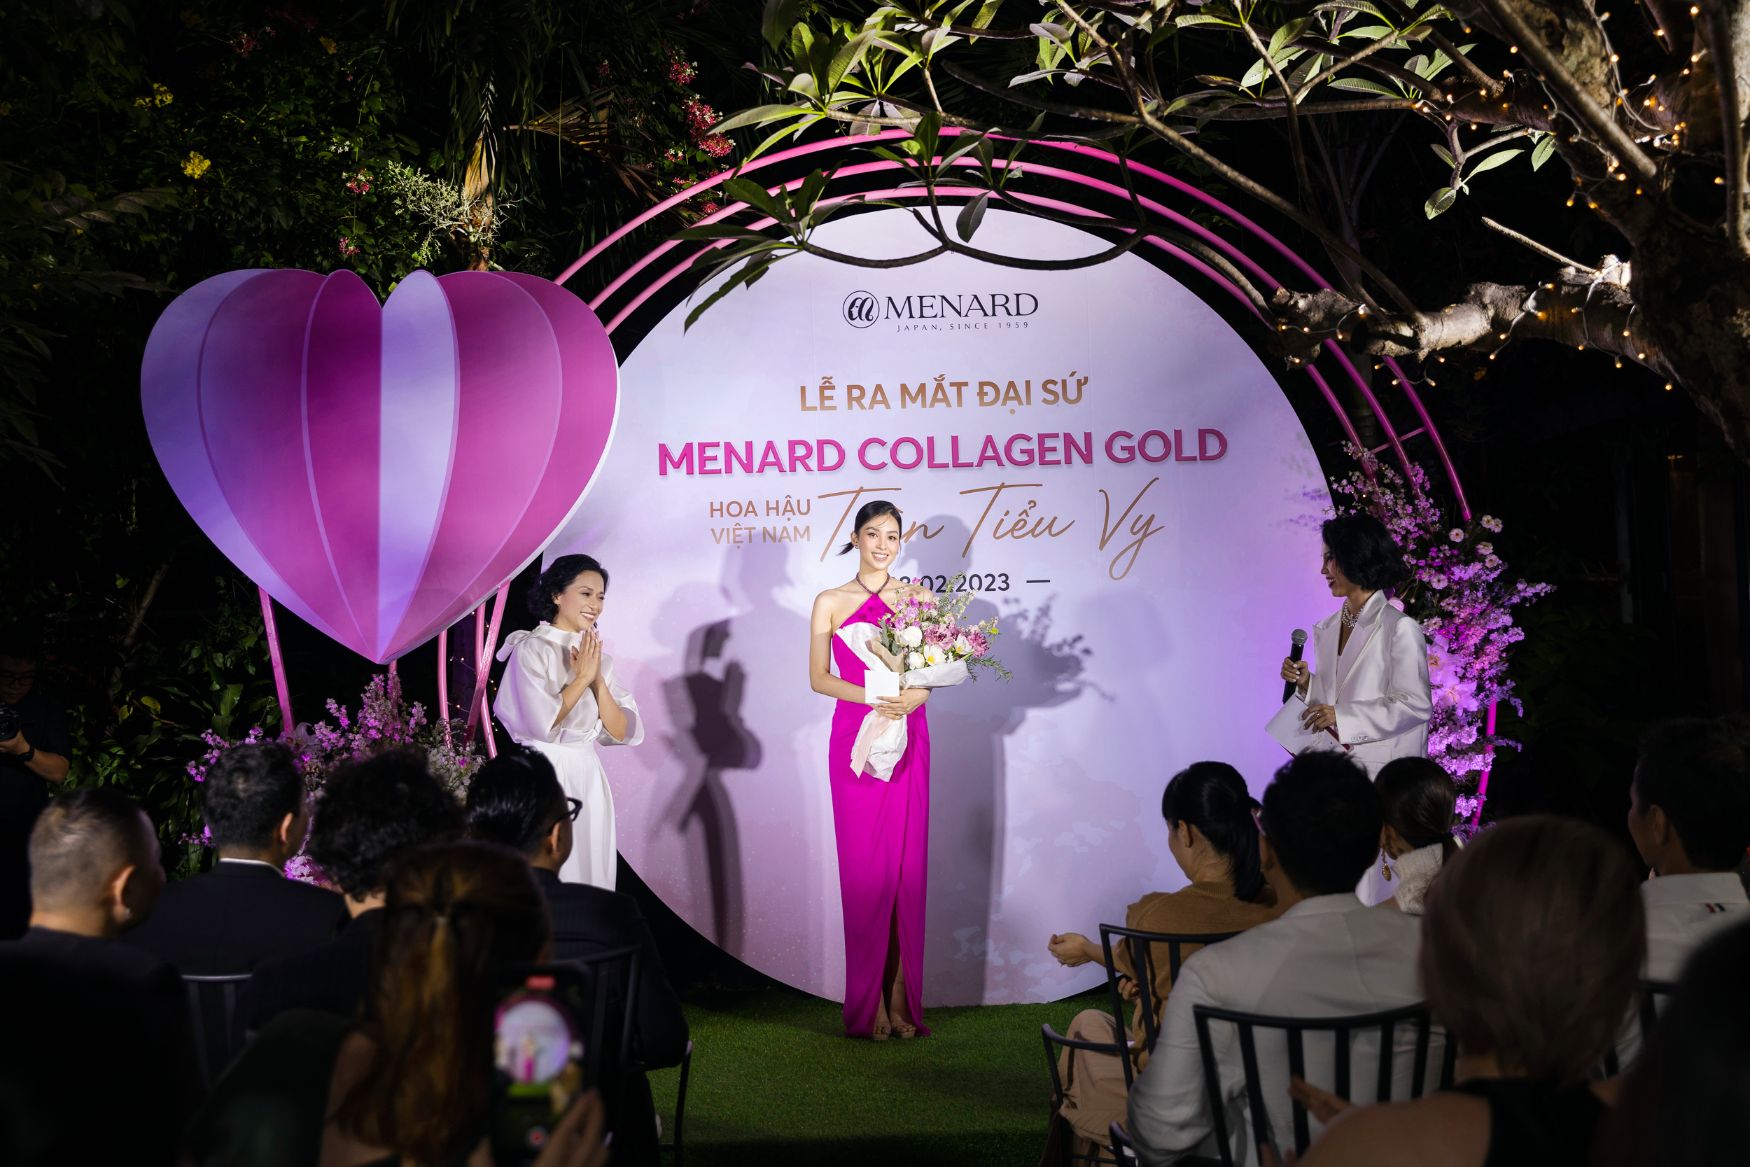 tiểu vy menard 3 Hoa hậu Tiểu Vy trở thành Đại sứ của sản phẩm cao cấp Menard Collagen Gold